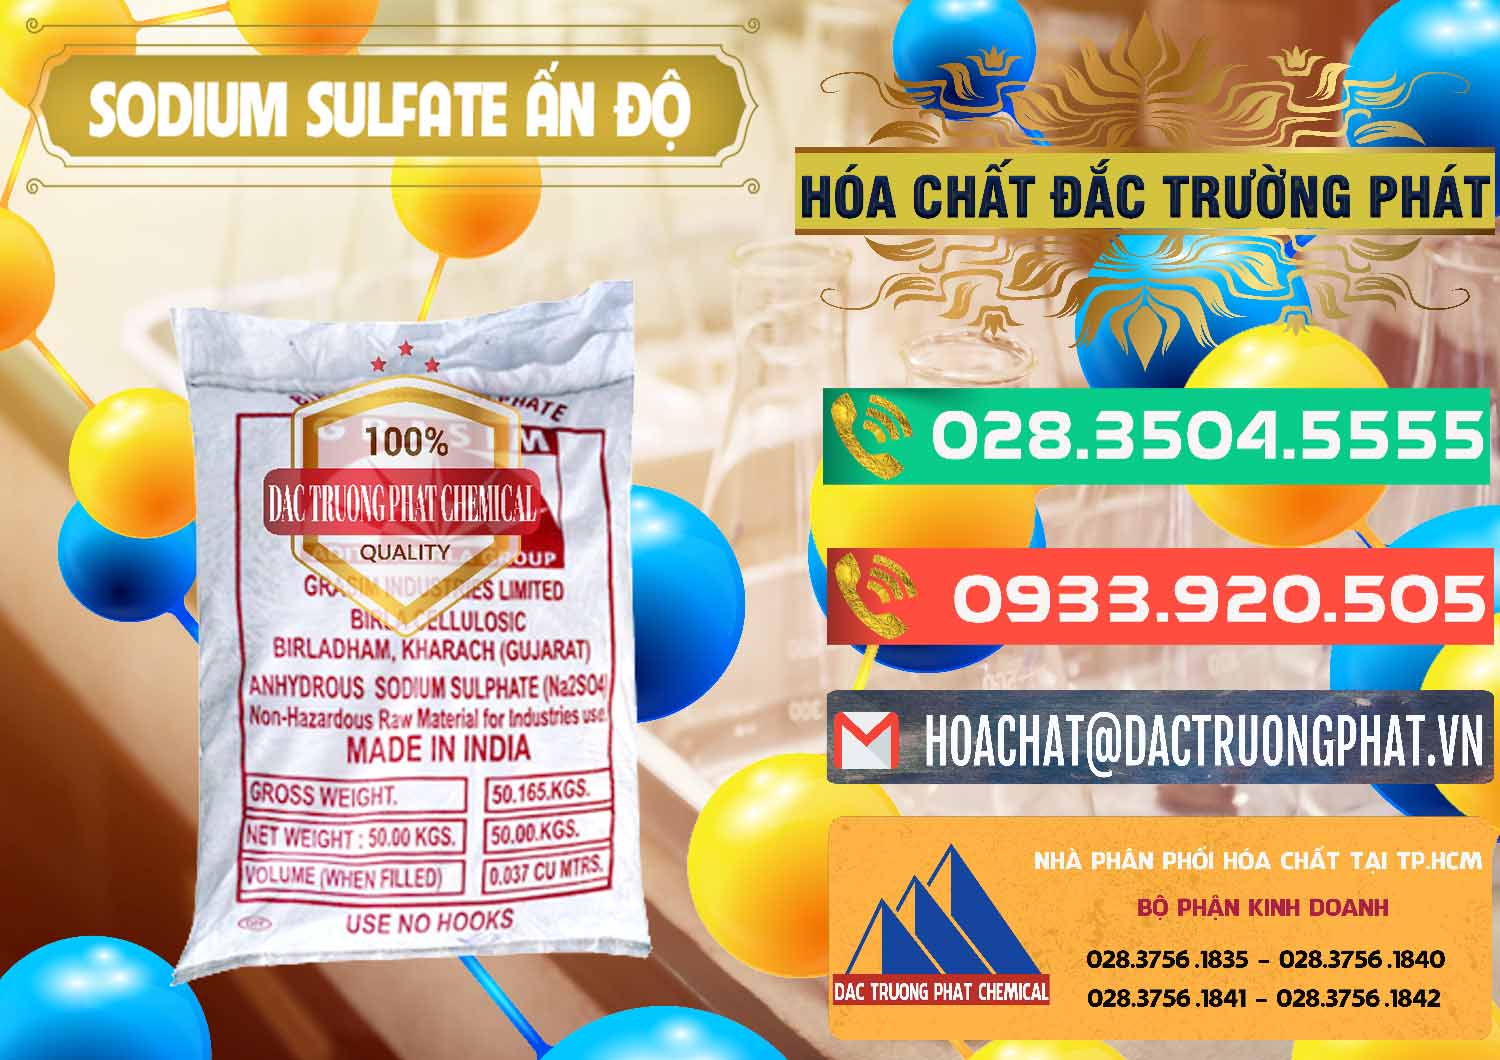 Nơi chuyên cung ứng _ bán Sodium Sulphate - Muối Sunfat Na2SO4 Aditya Birla Grasim Ấn Độ India - 0462 - Chuyên cung cấp & phân phối hóa chất tại TP.HCM - congtyhoachat.com.vn